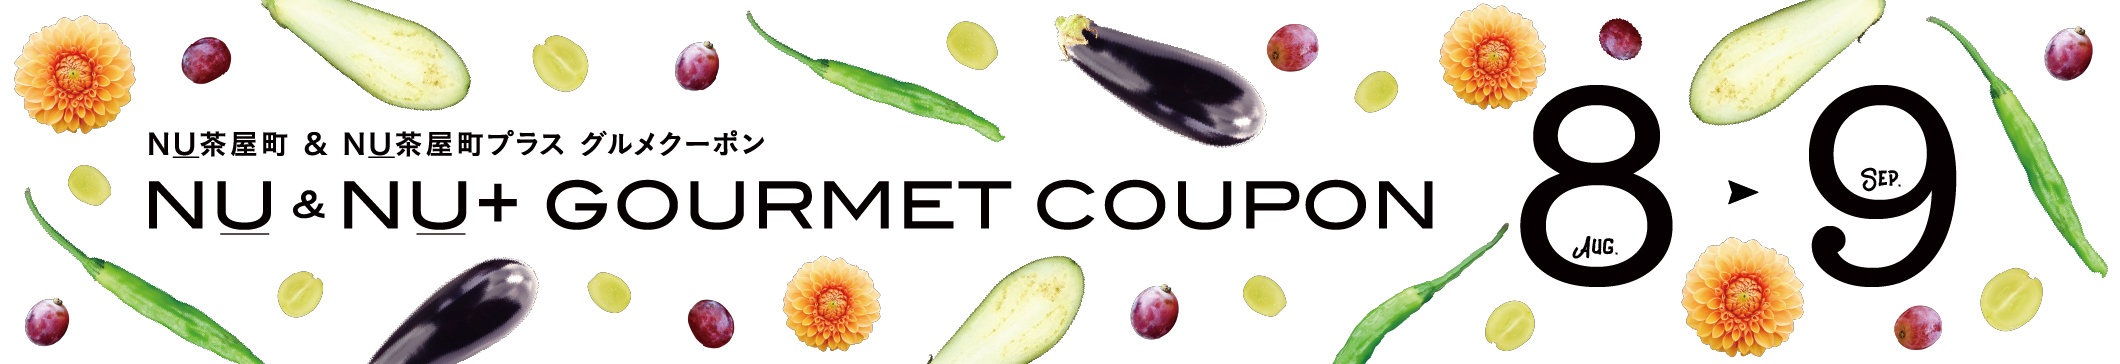 gourmet_coupon_8月9月